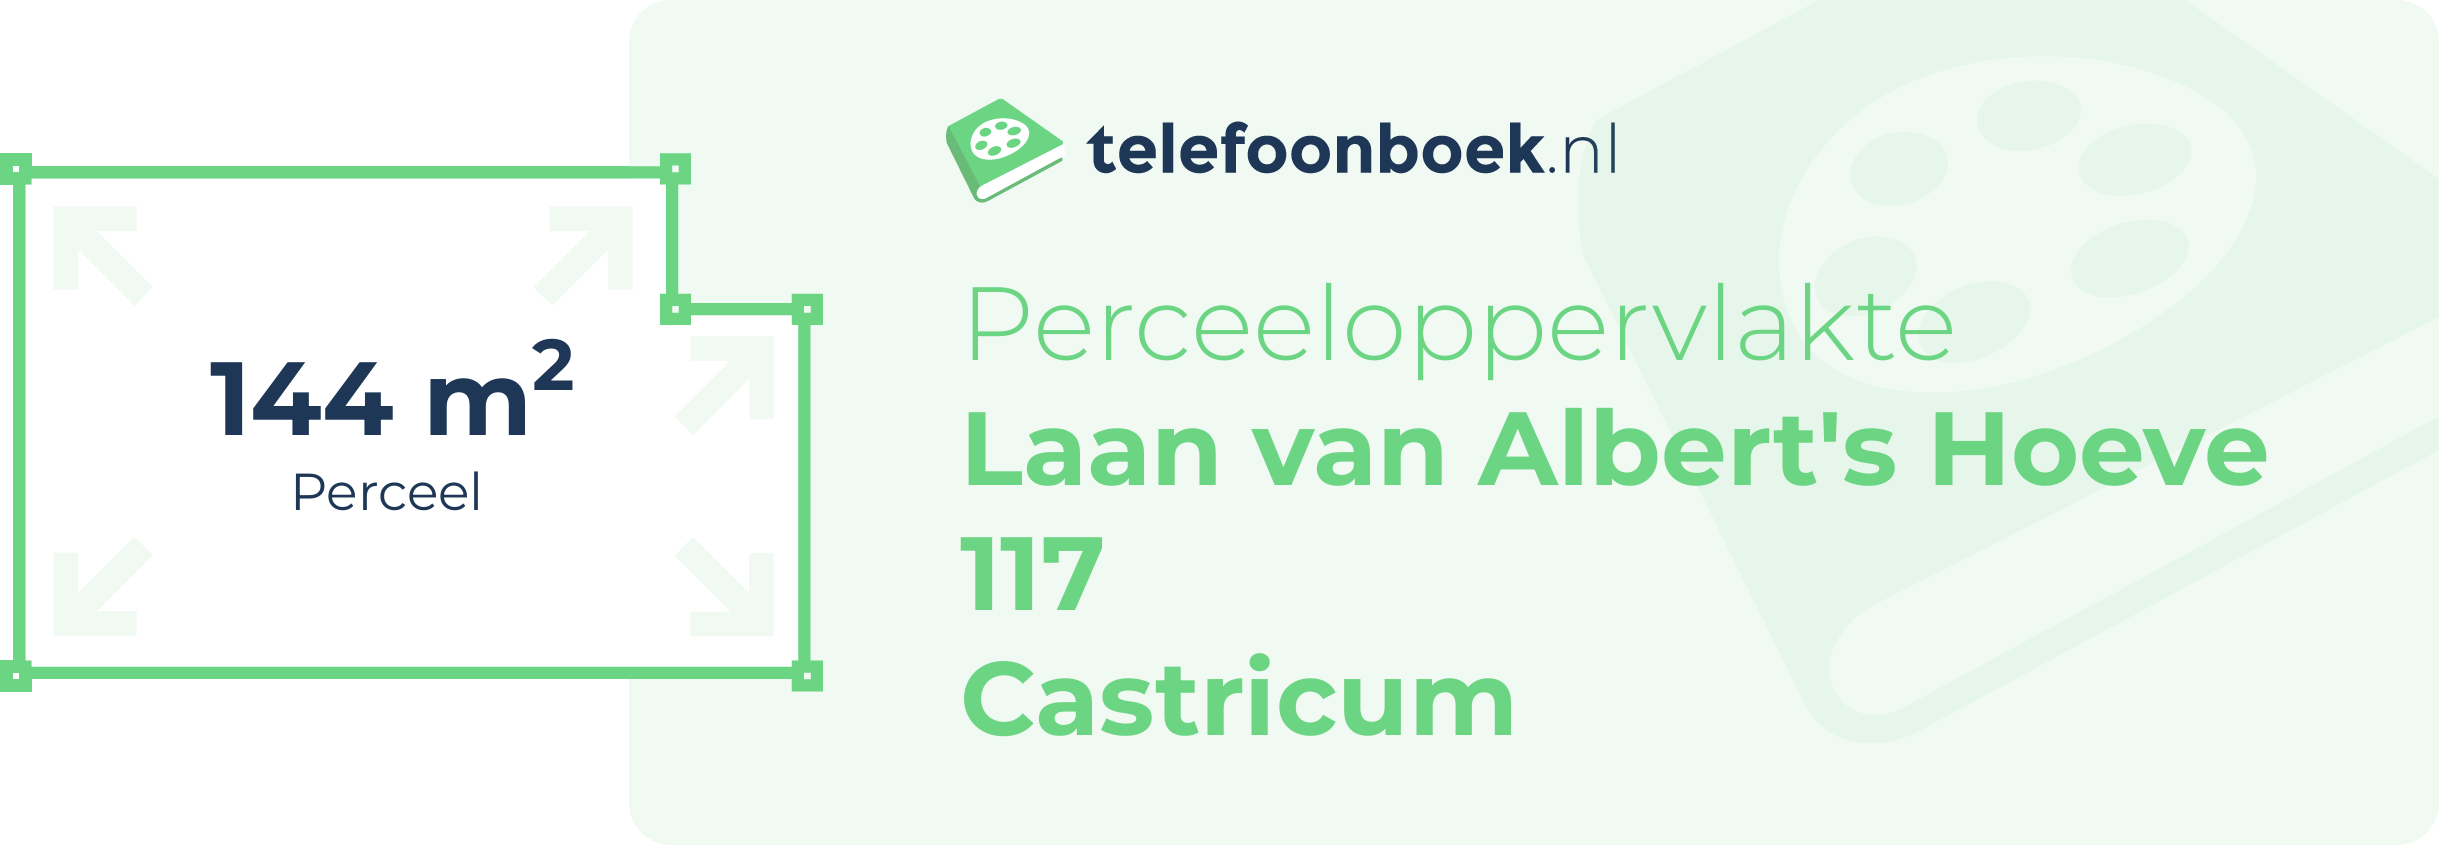 Perceeloppervlakte Laan Van Albert's Hoeve 117 Castricum